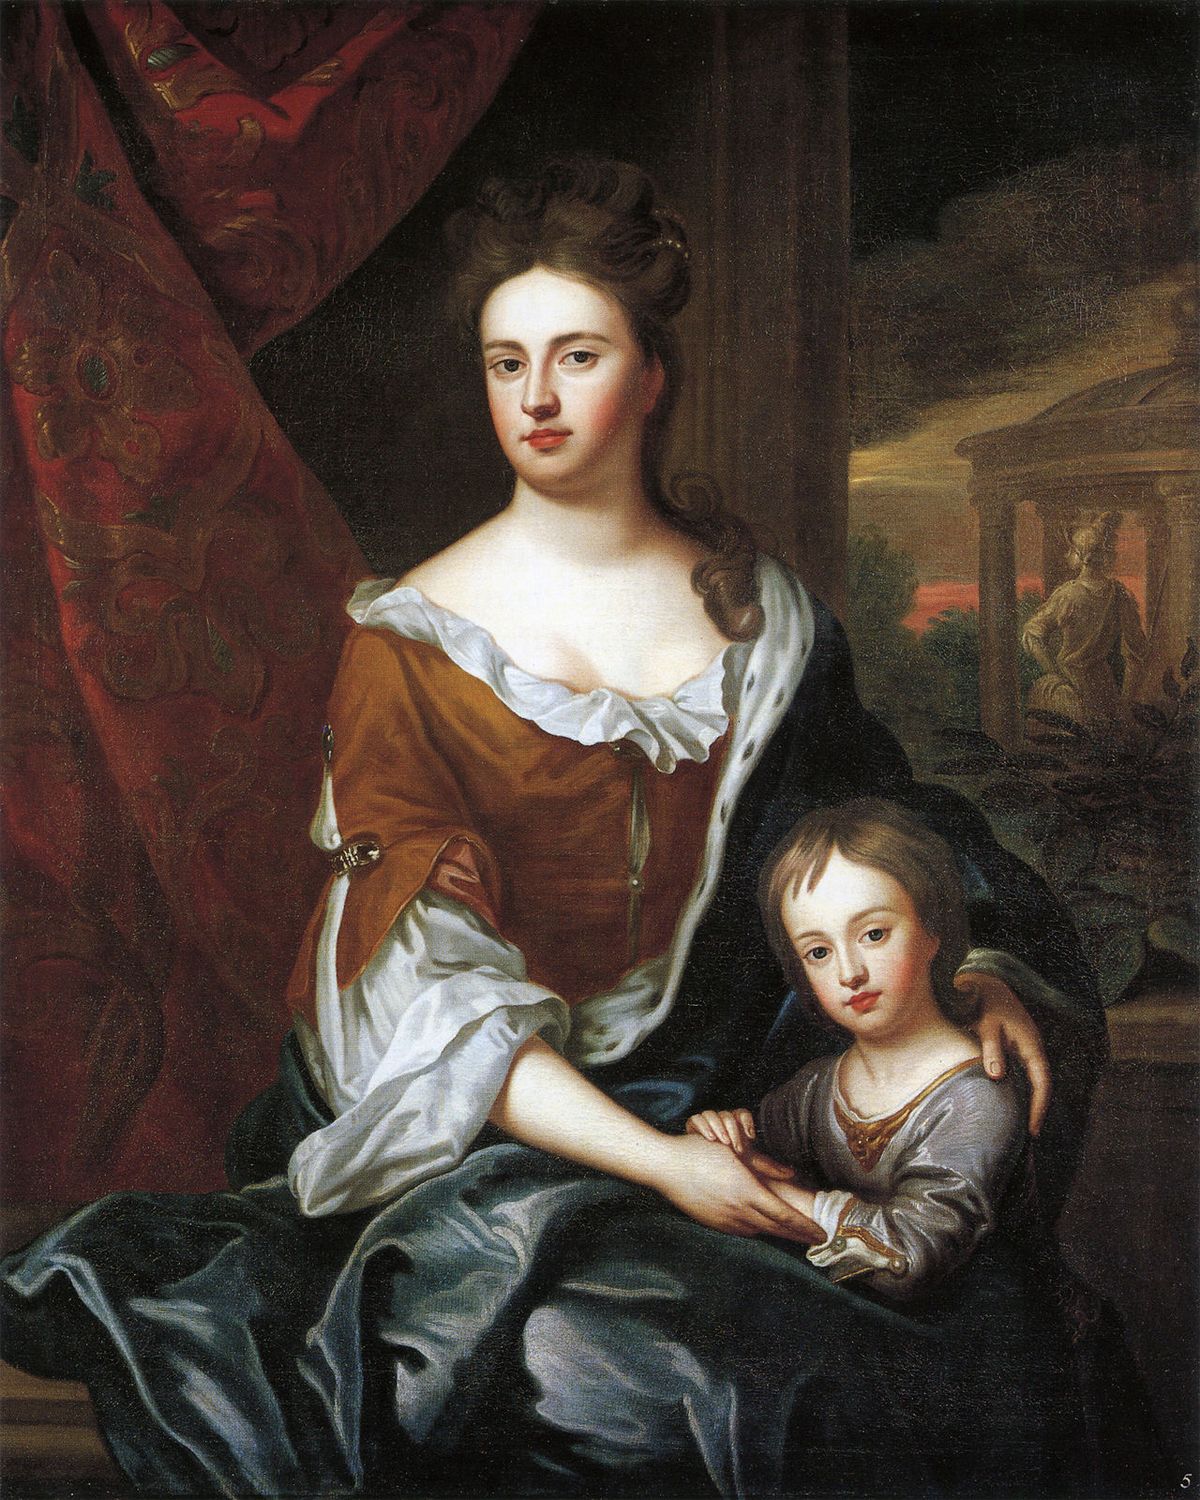 Anya és fia: Anna és az 1689-ben született Vilmos, Anna királynő egyetlen csecsemőkort túlélt gyermeke